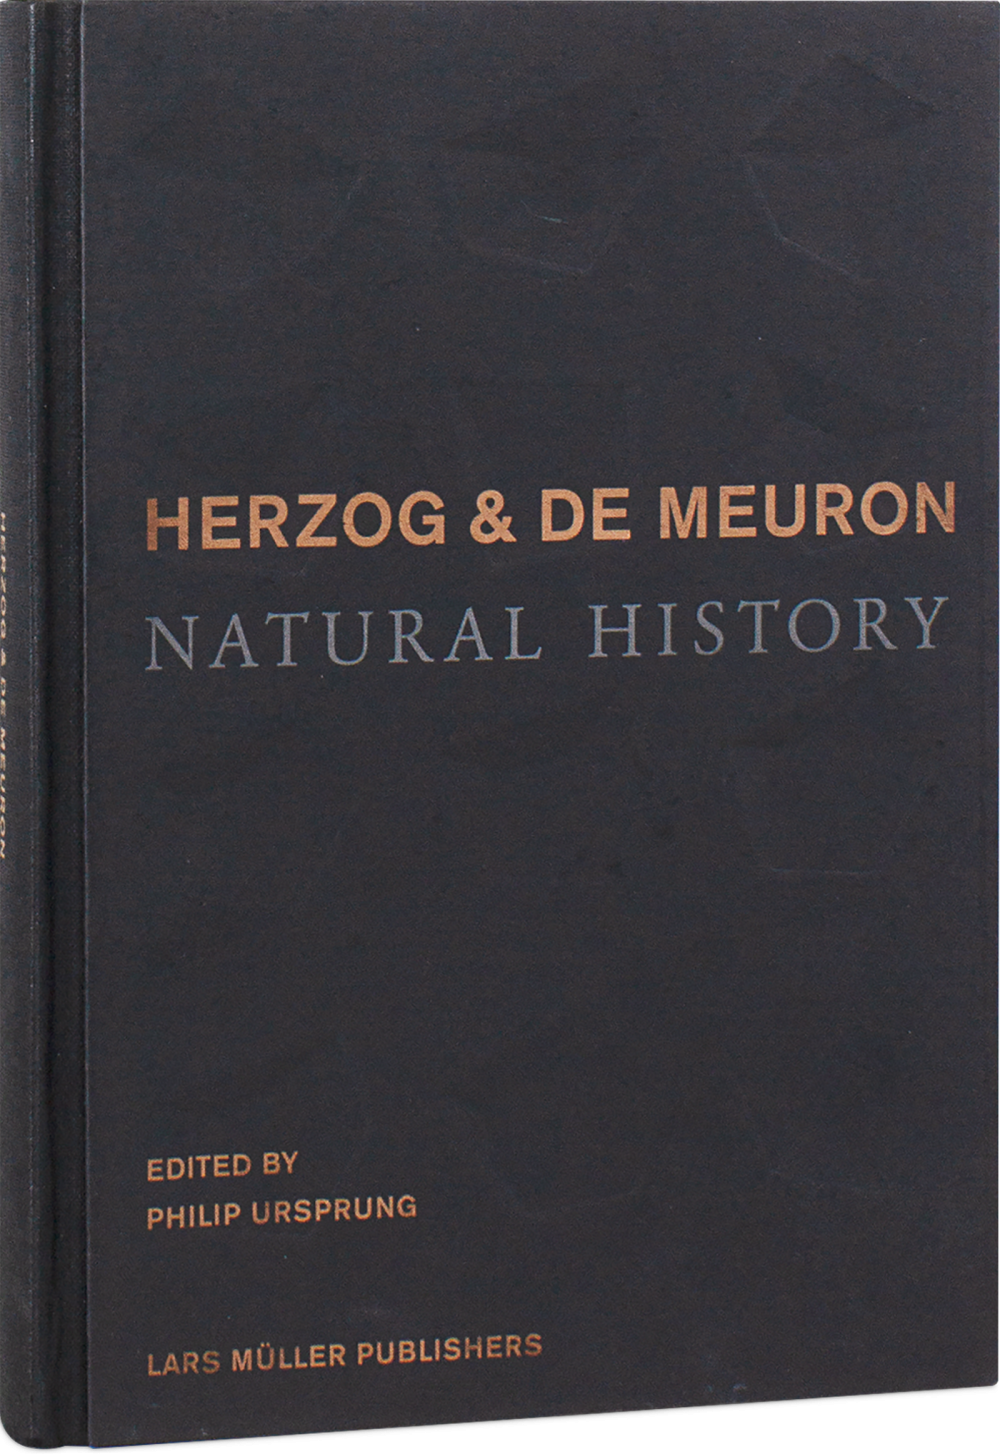 天才的NATURAL HISTORY / HERZOG & DE MEURON 洋書